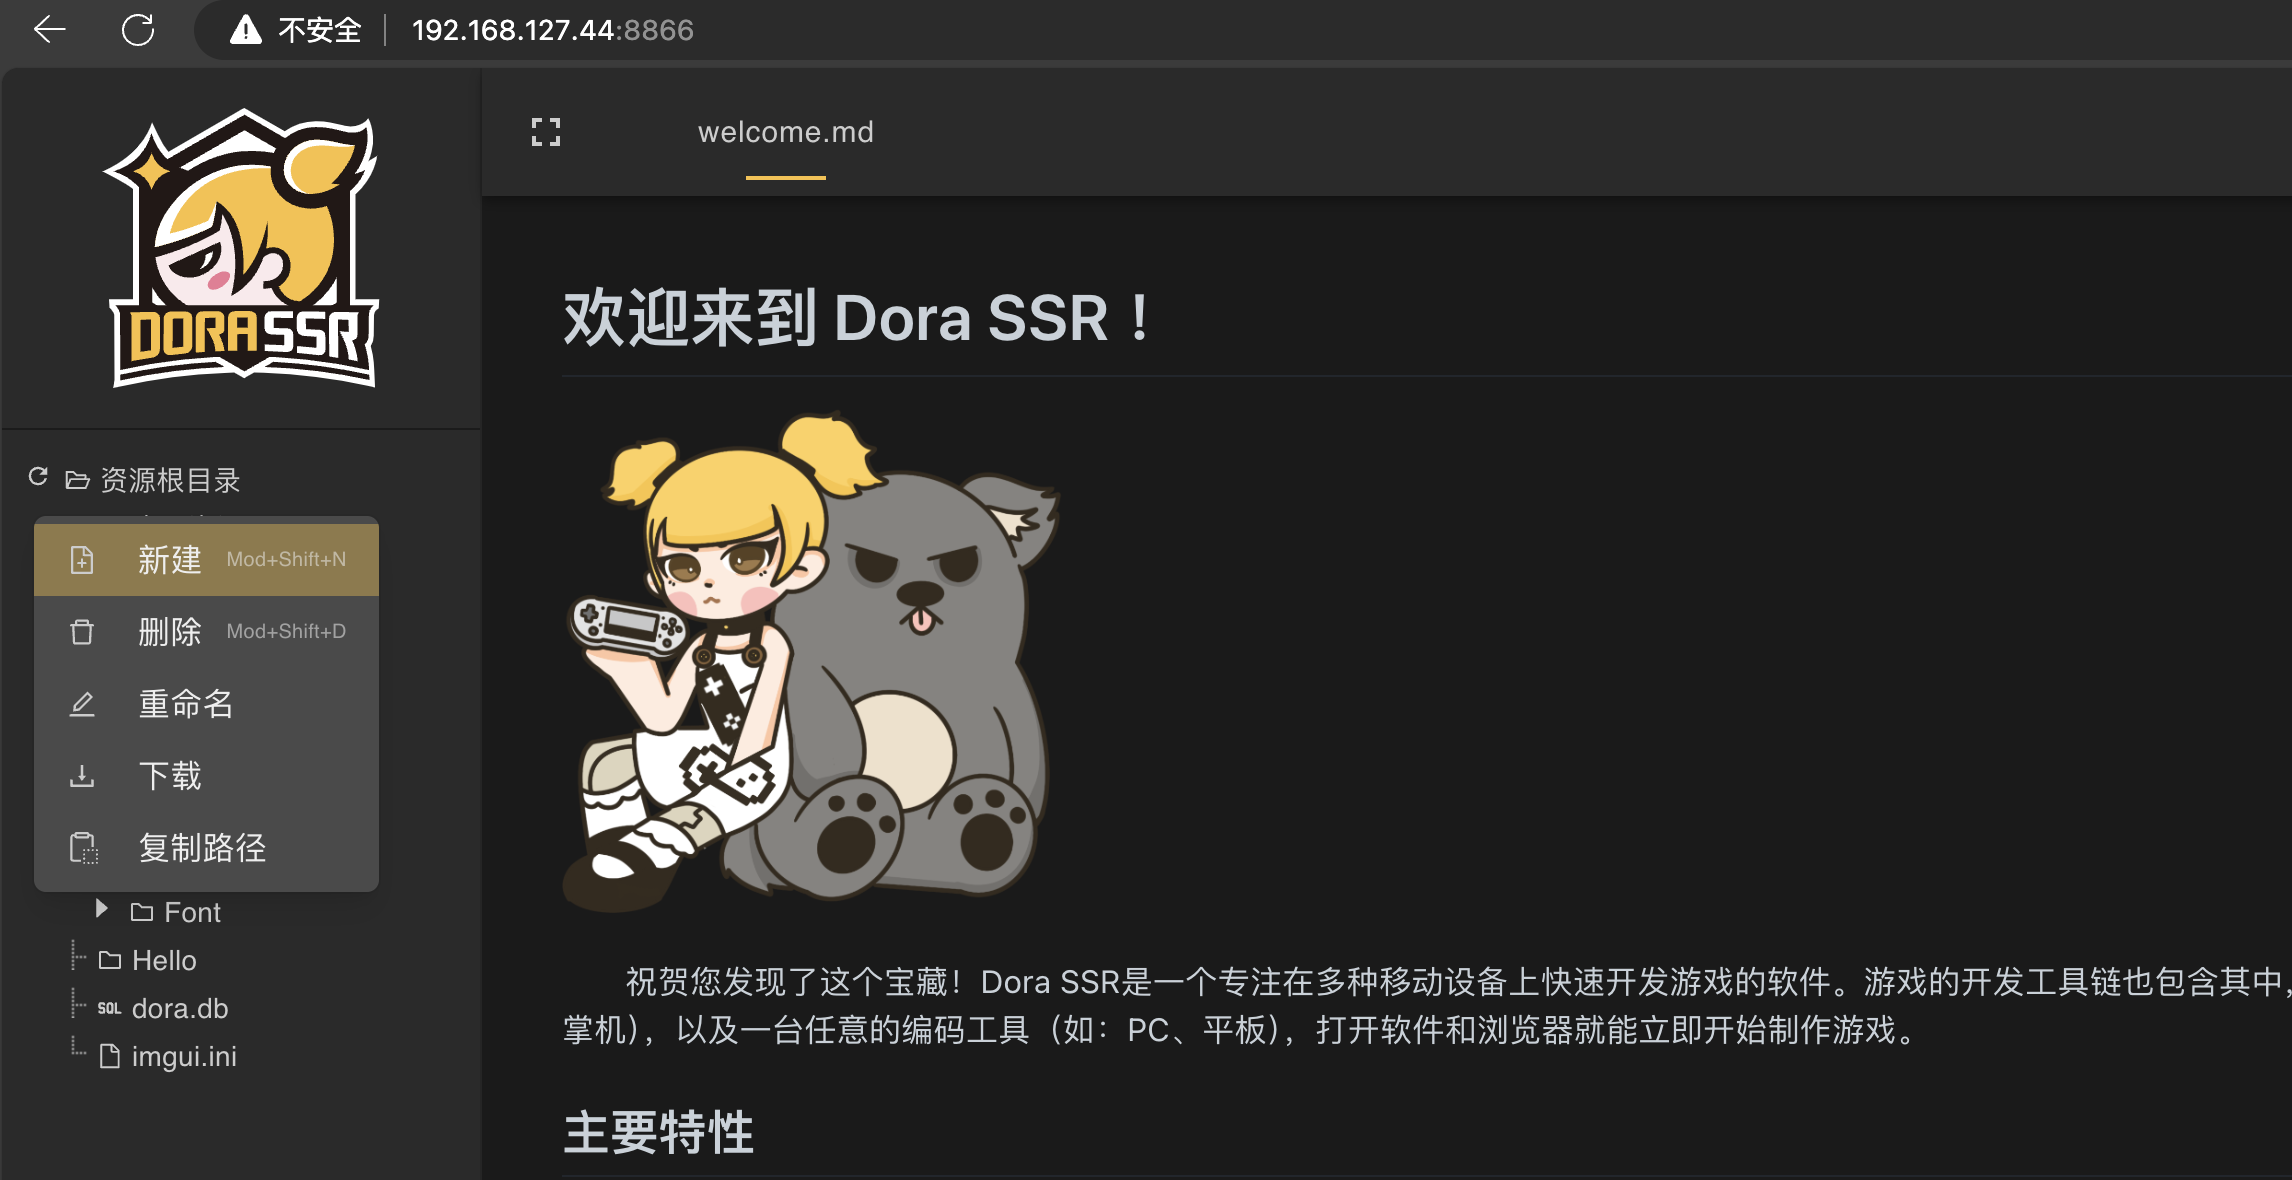 Acesse o Web IDE da Dora SSR no navegador e crie uma nova pasta